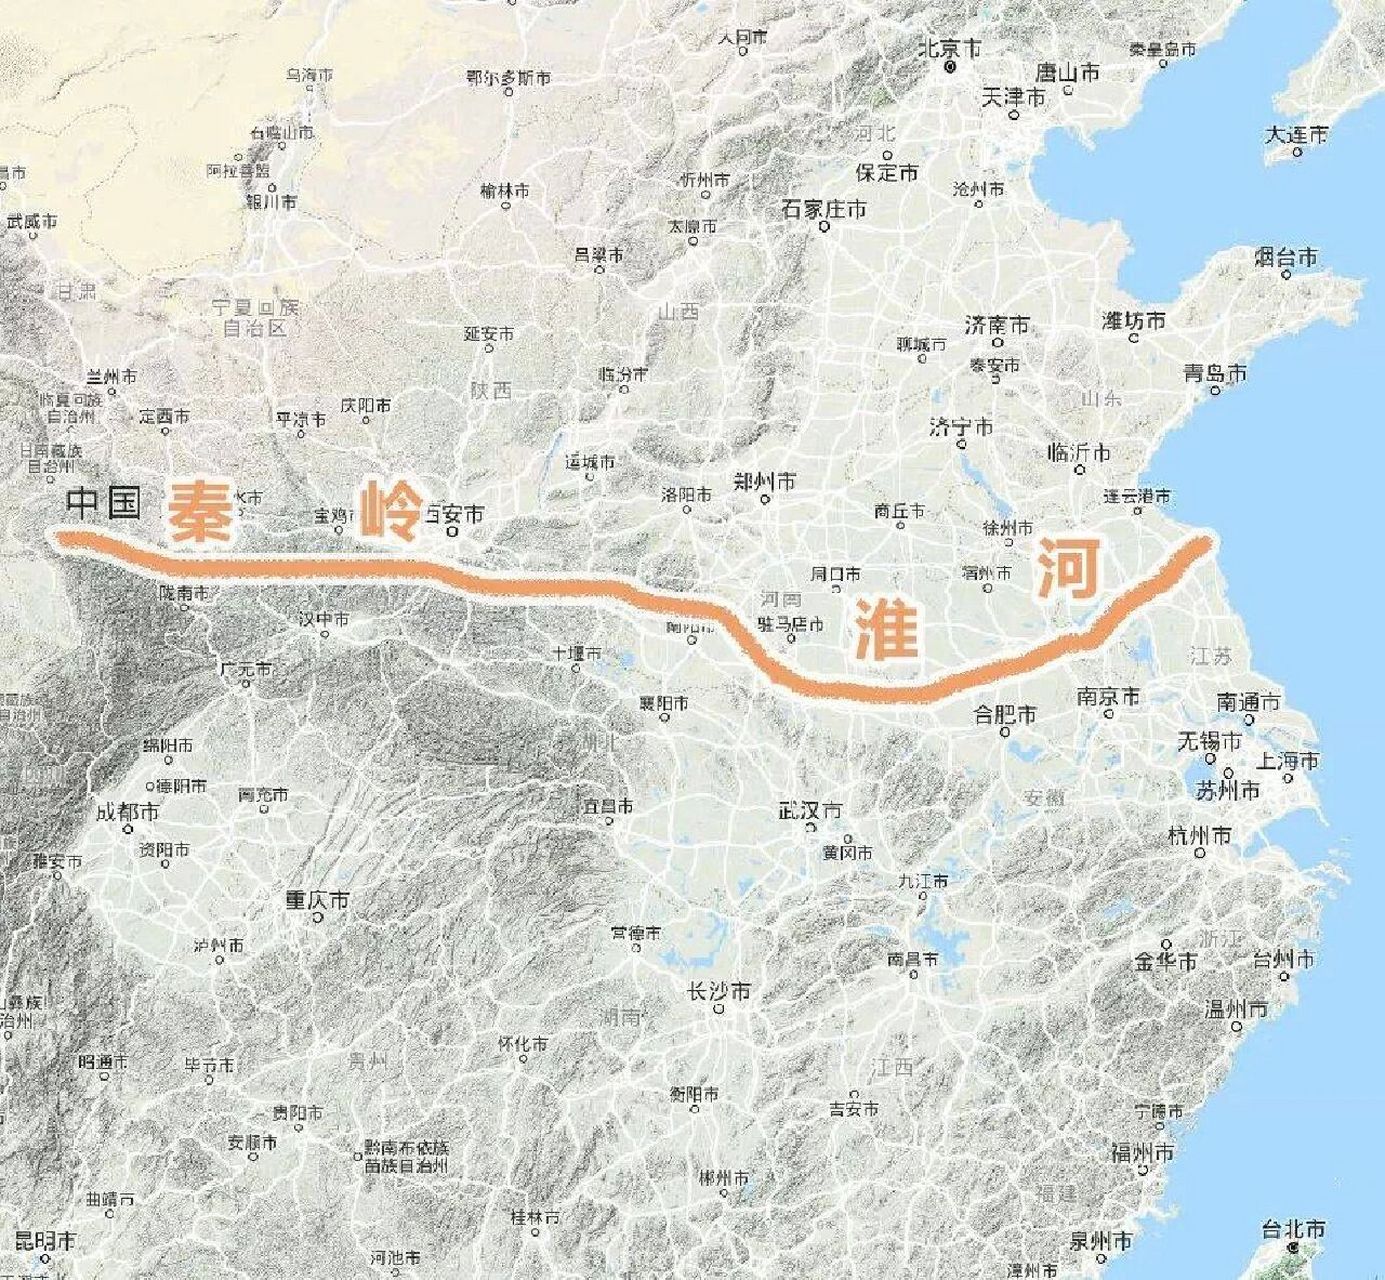 秦岭淮河一线是1908年才提出的南北分界线 南北分界线应该参考汉地